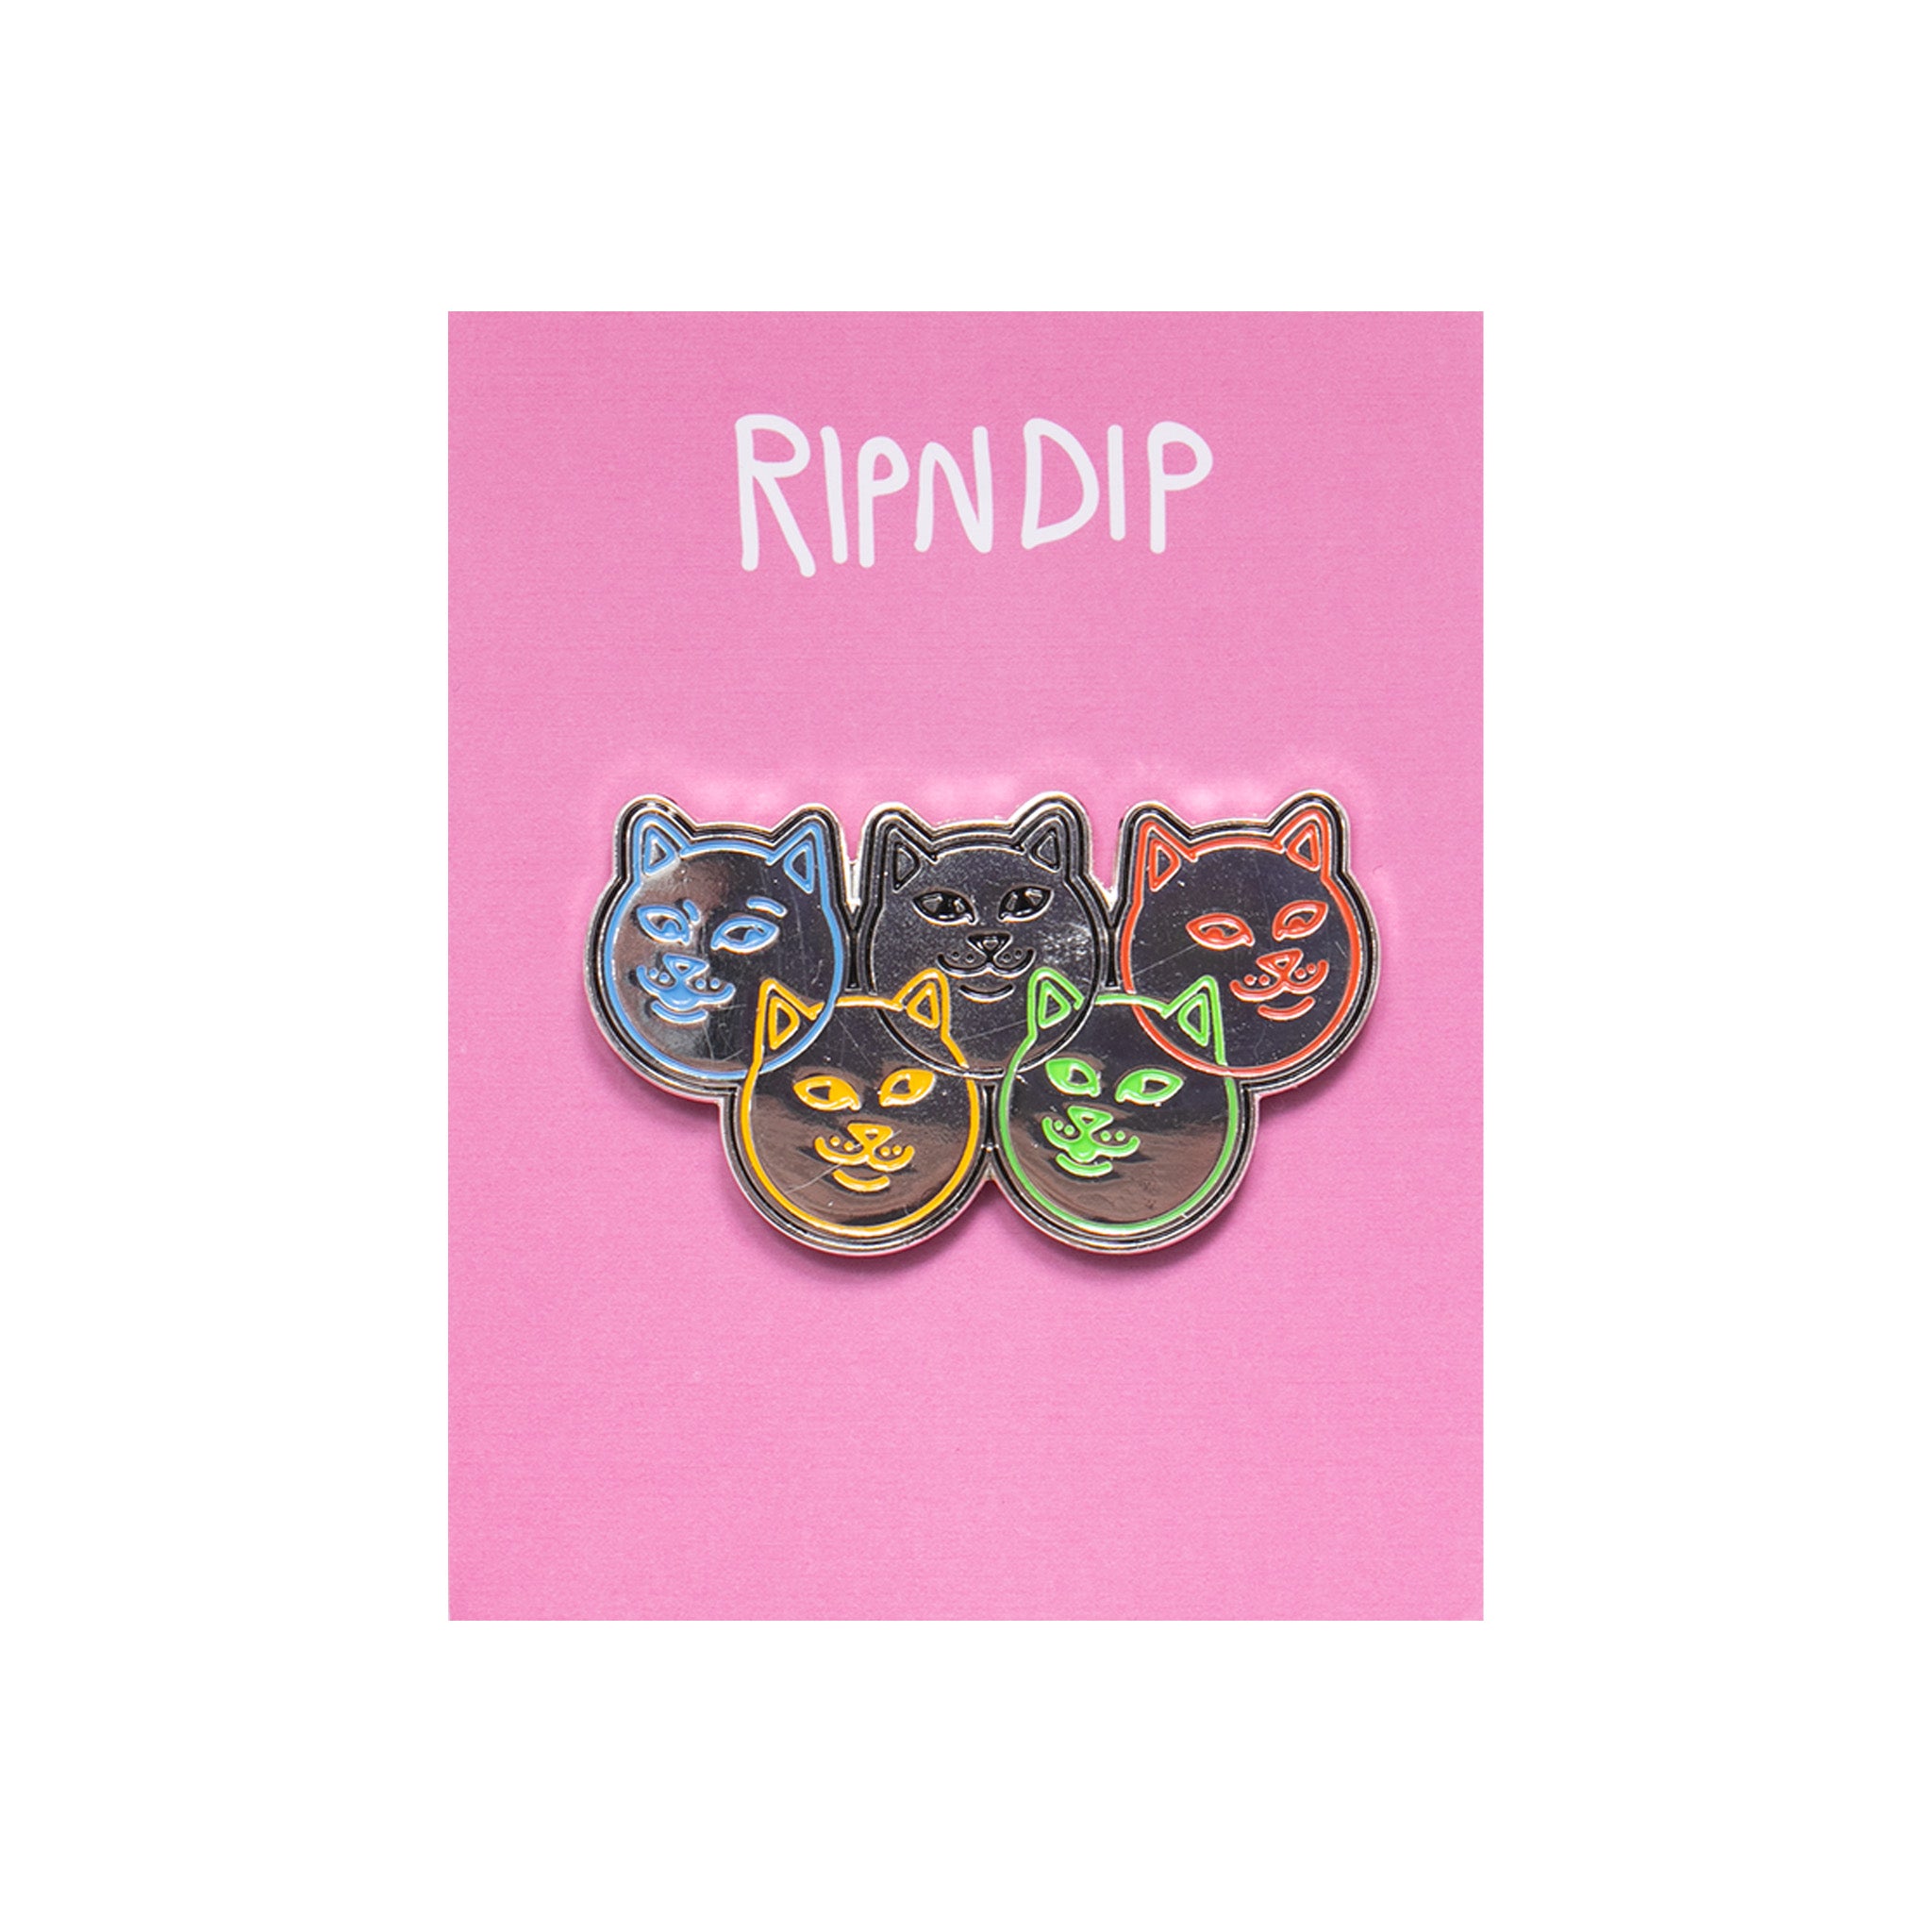 RIPNDIP Winners Circle Pin